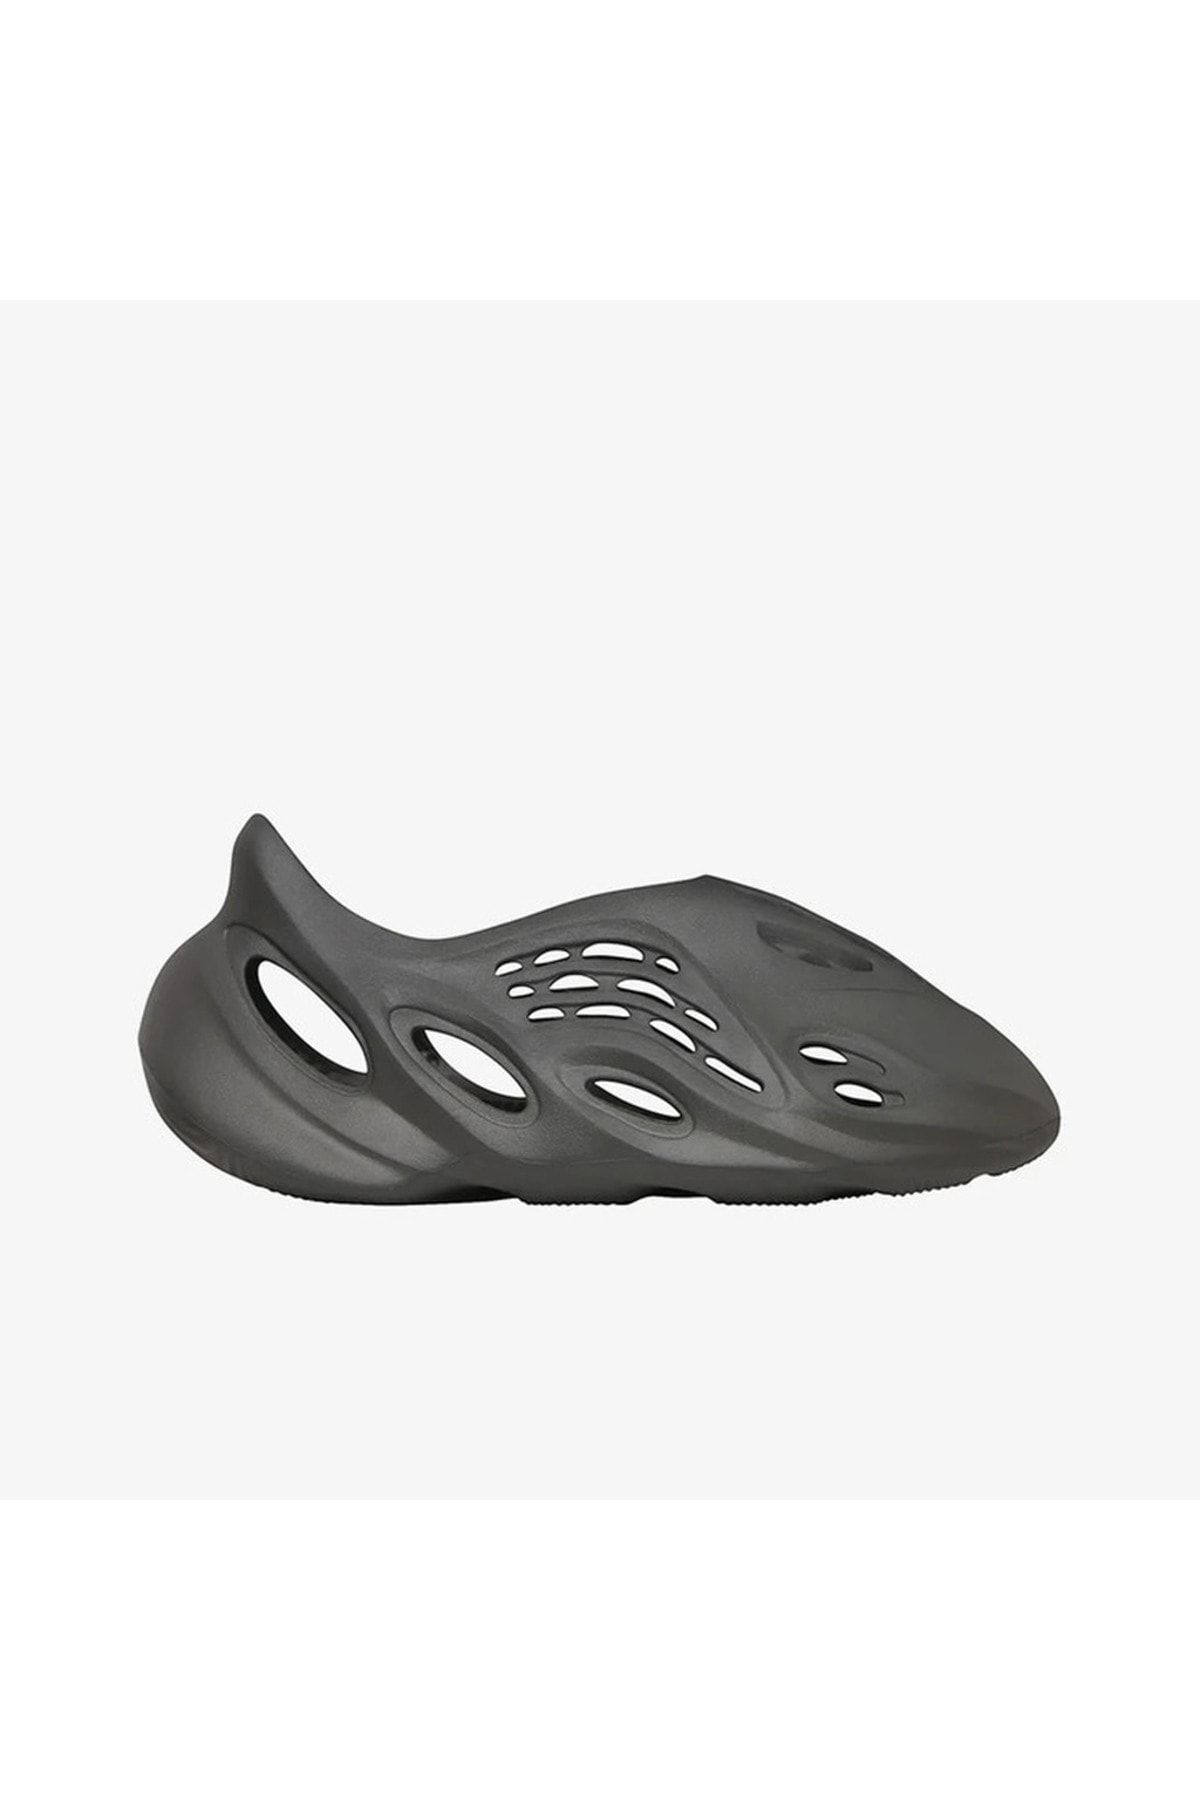 adidas Yeezy Foam Runner 'carbon' 1 Numara Büyük Tercih Edilmelidir